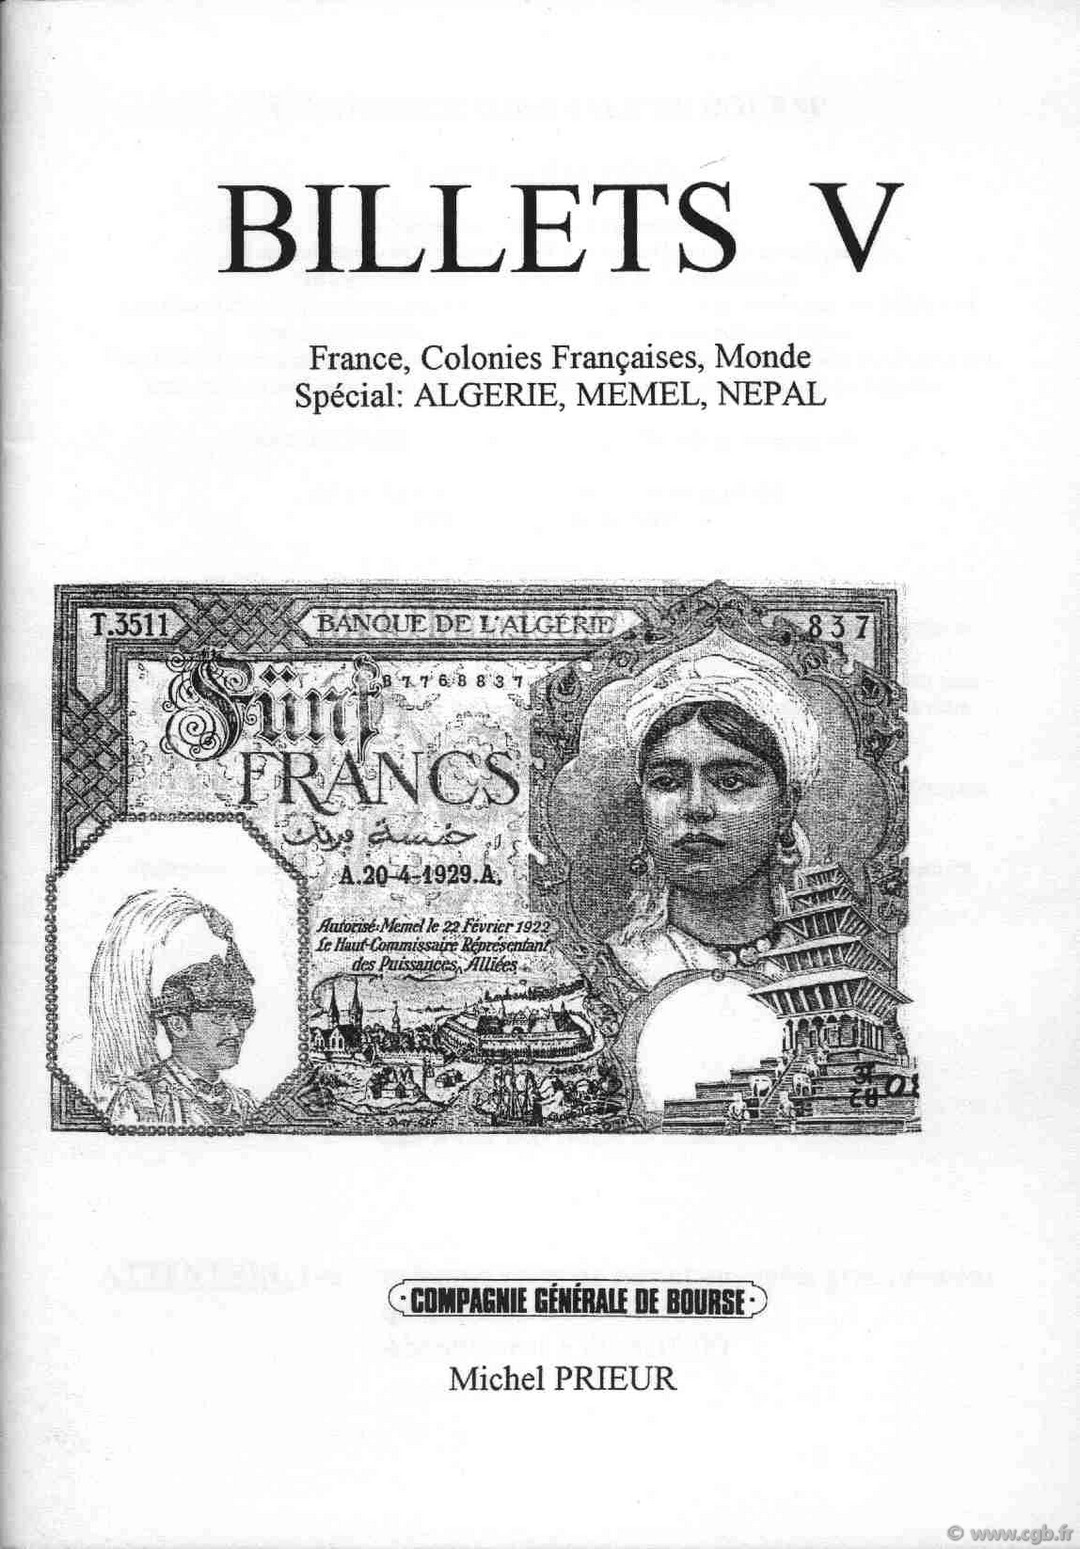 Billets 5 - France - Algérie - Mémel - Népal PRIEUR Michel, DESSAL Jean-Marc